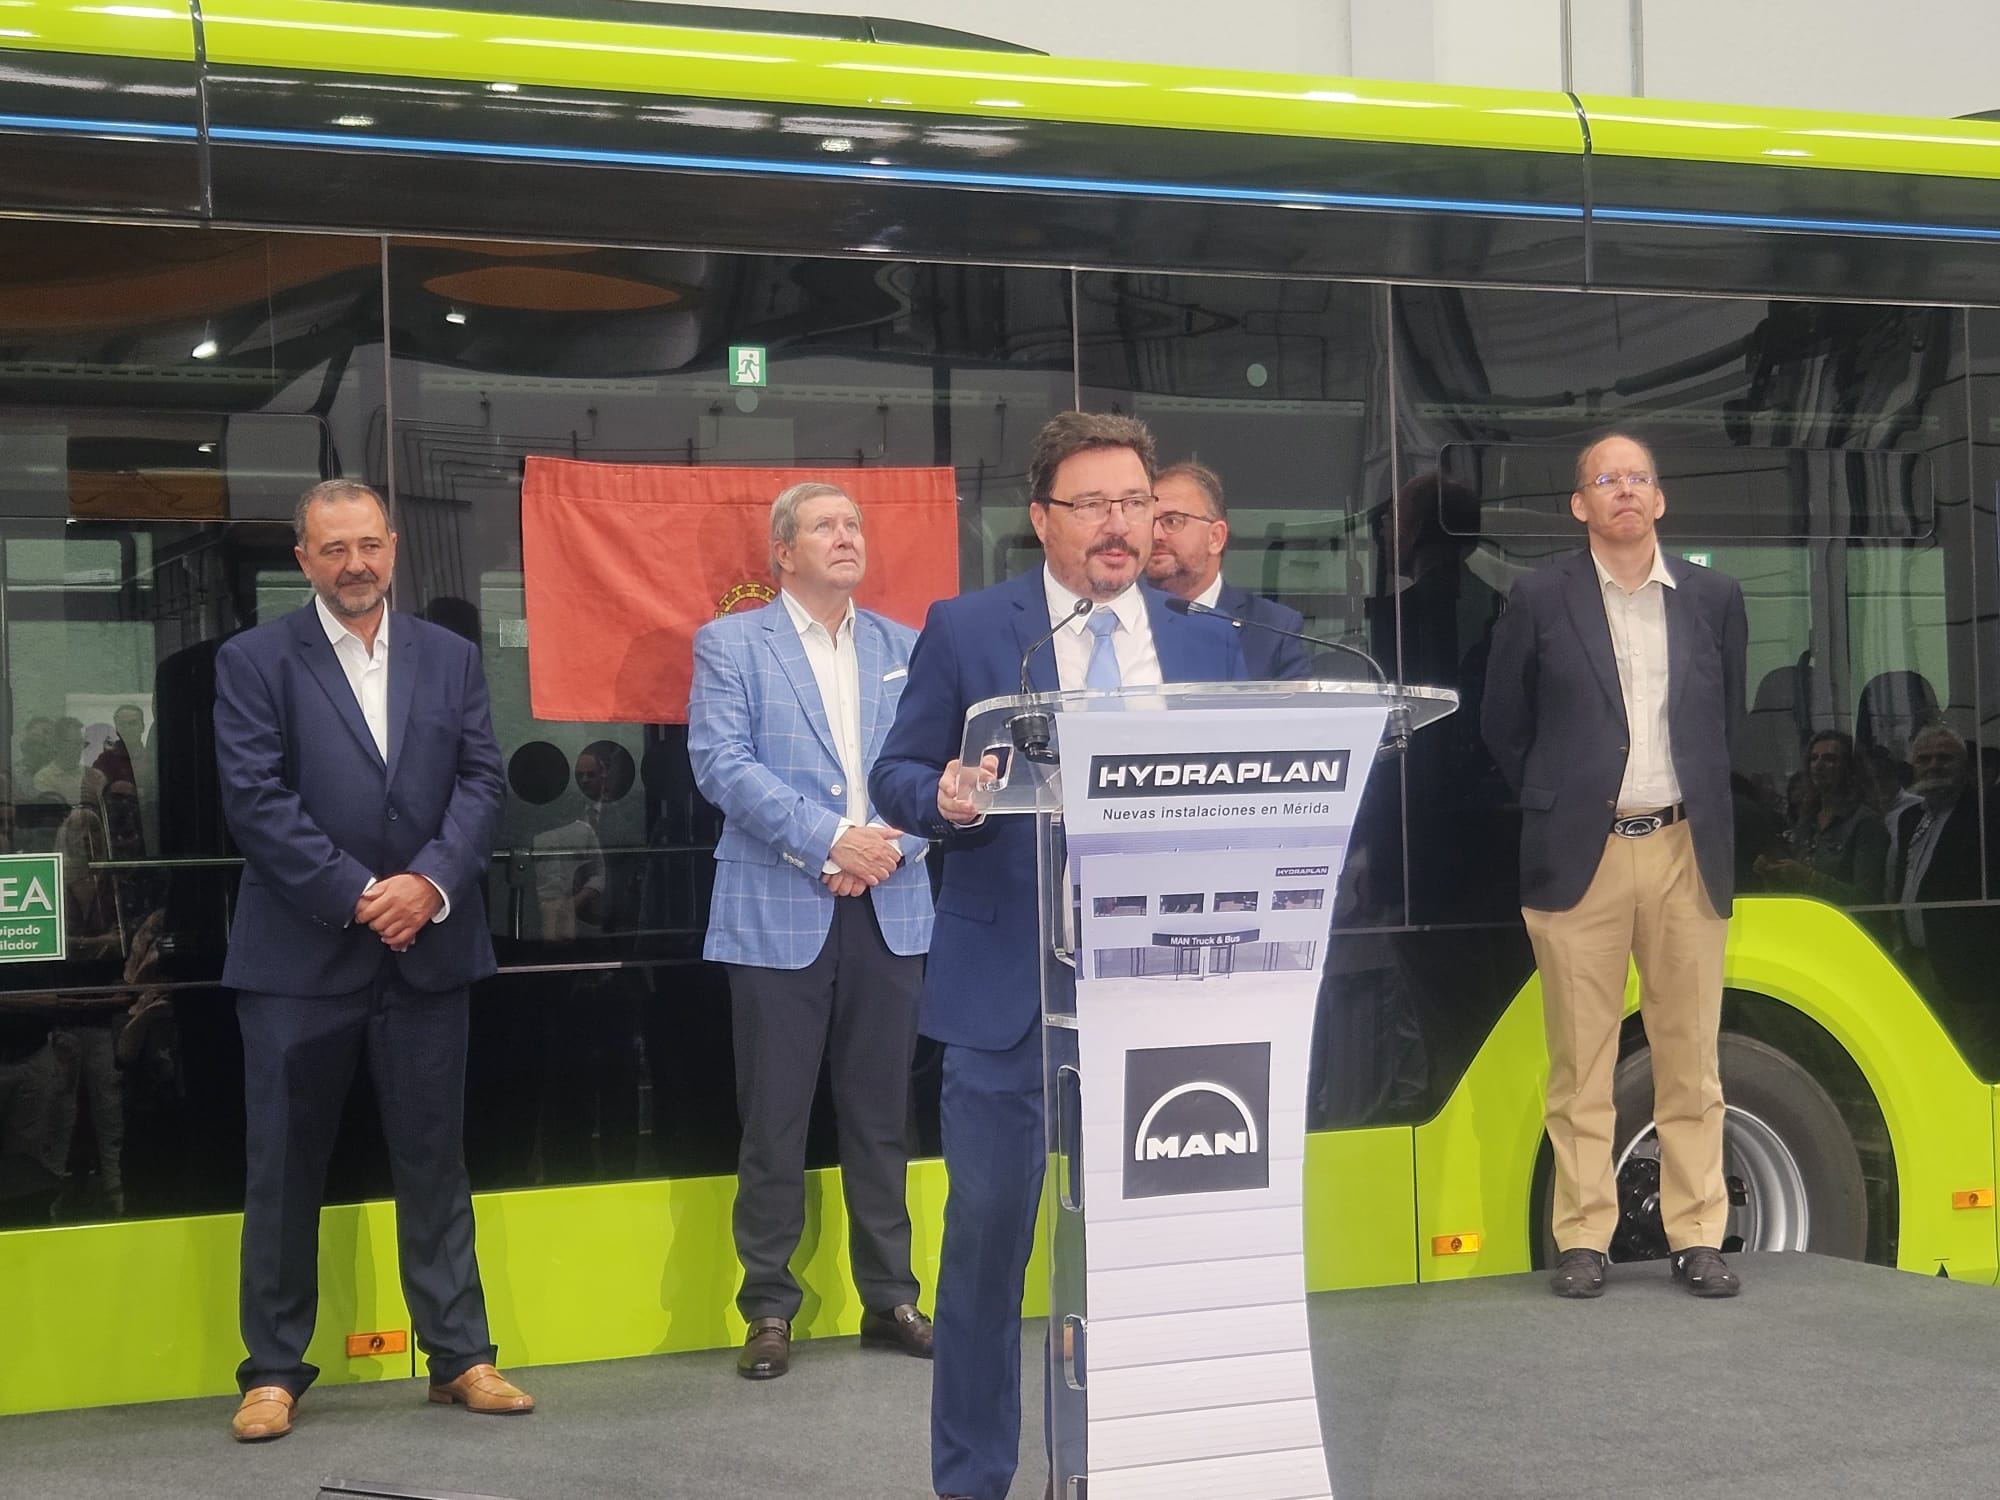 Foto de El consejero Santamaría inaugura las nuevas instalaciones de la empresa Hydraplan, Man Truck & Bus en Mérida que han pasado de 3.000 a 15.000 metros cuadrados